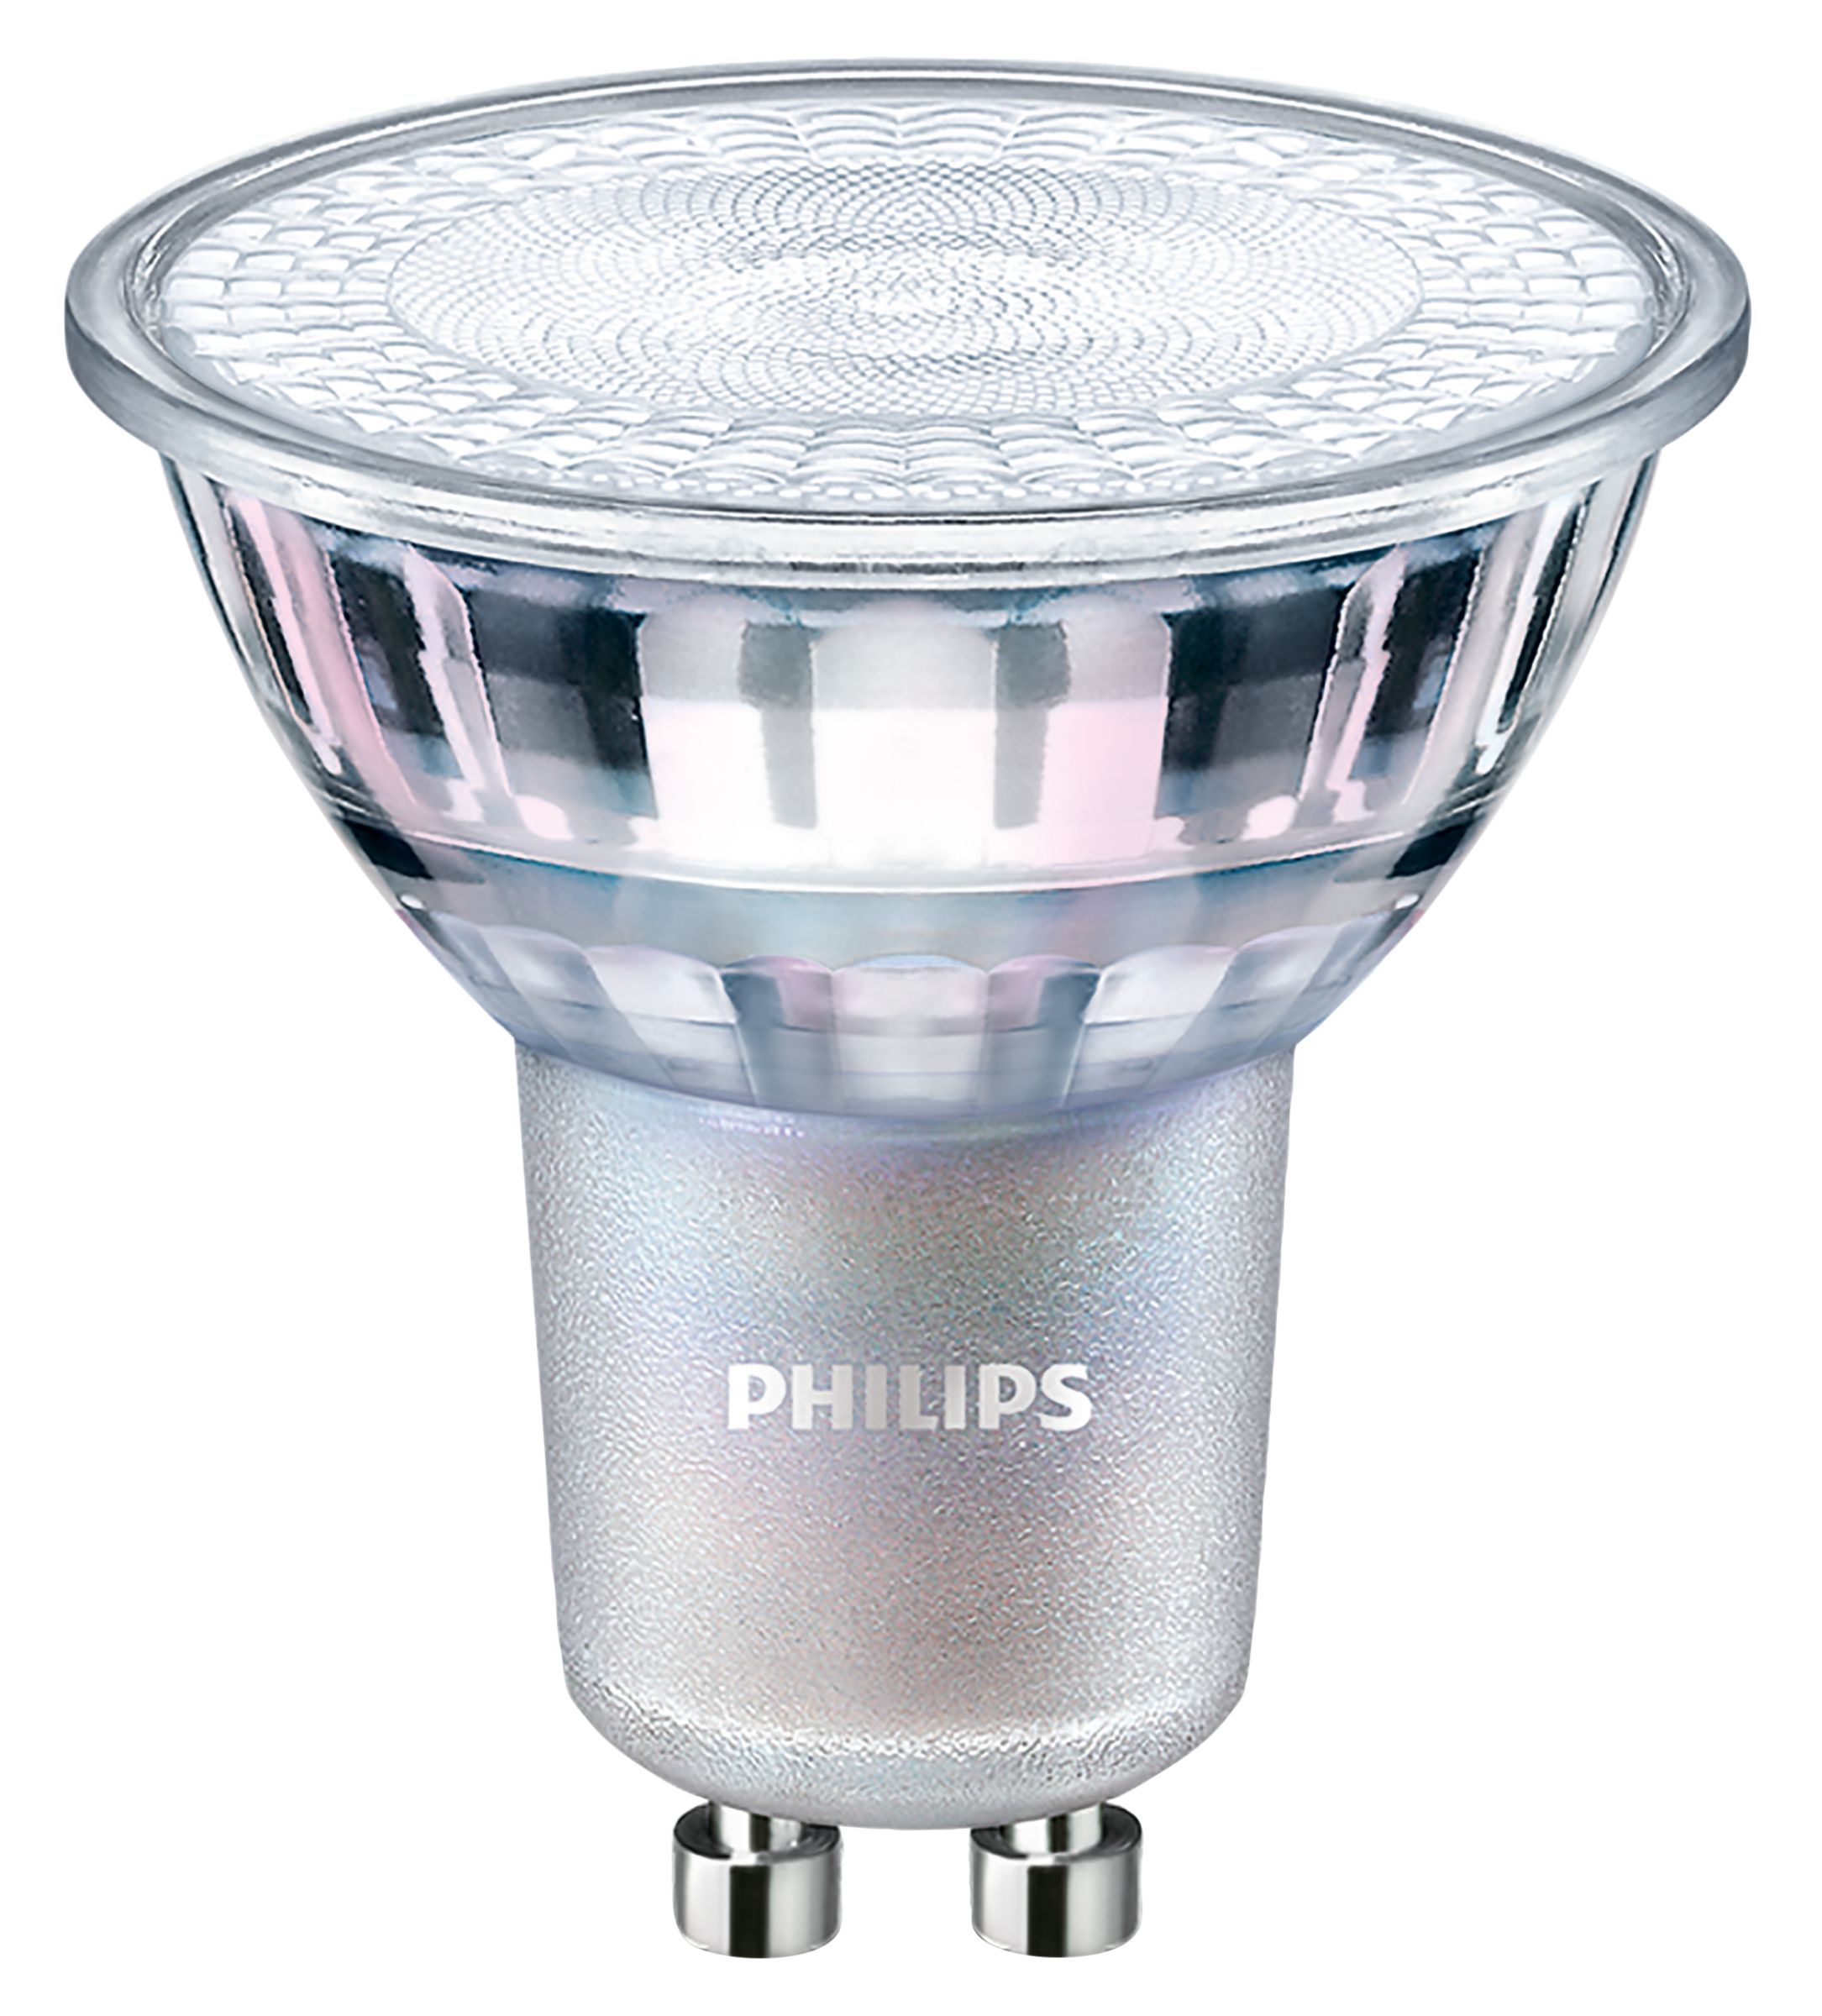 Philips GU10 PH MV LED 4.9W 355Lm 36° 927-922 dimtone 